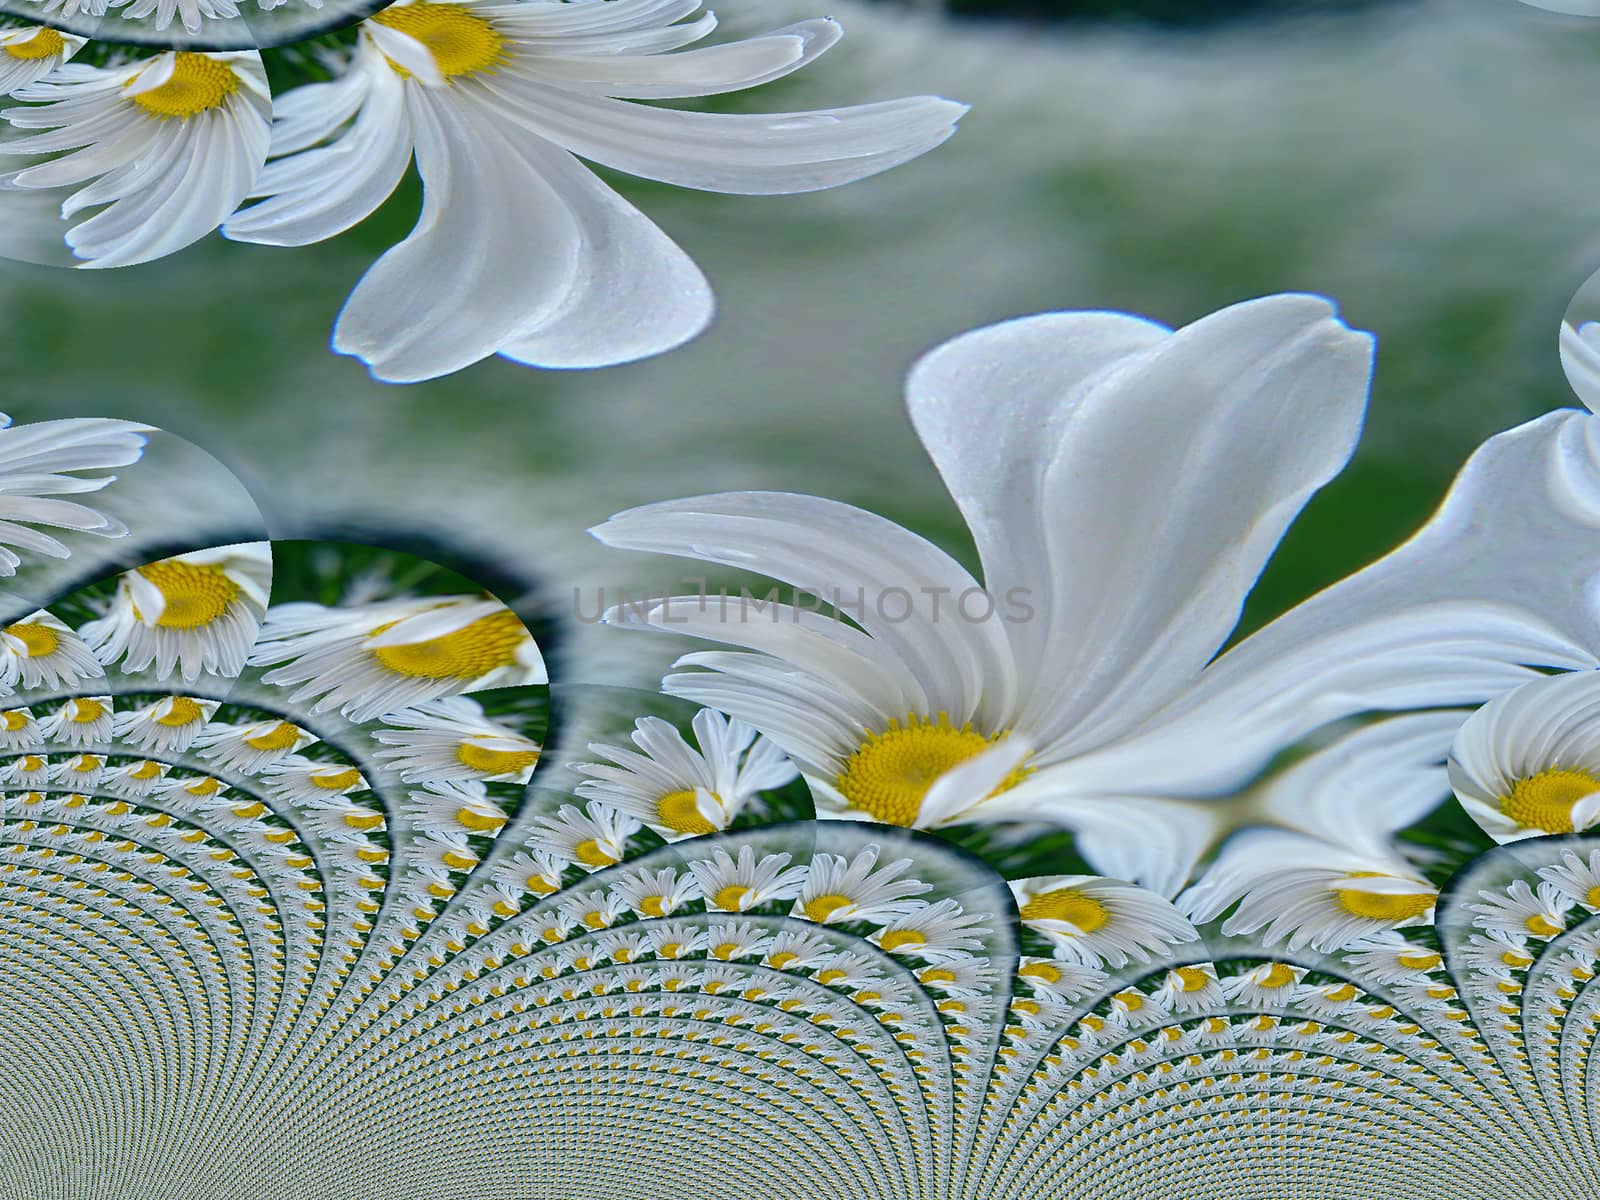 Flower fractal by applesstock